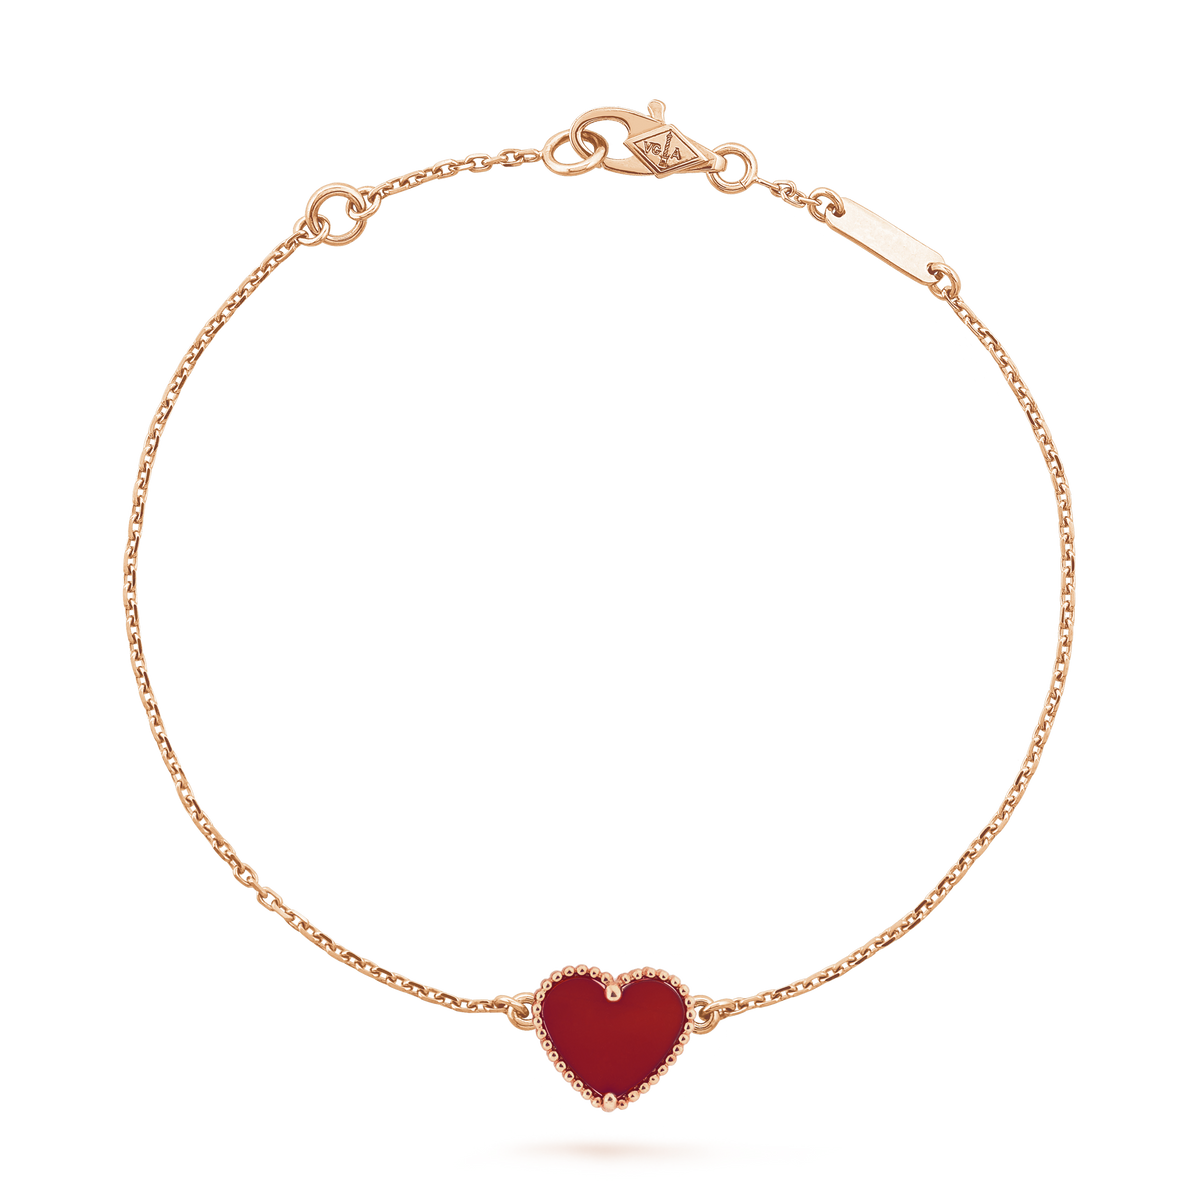 Sweet Alhambra heart bracelet